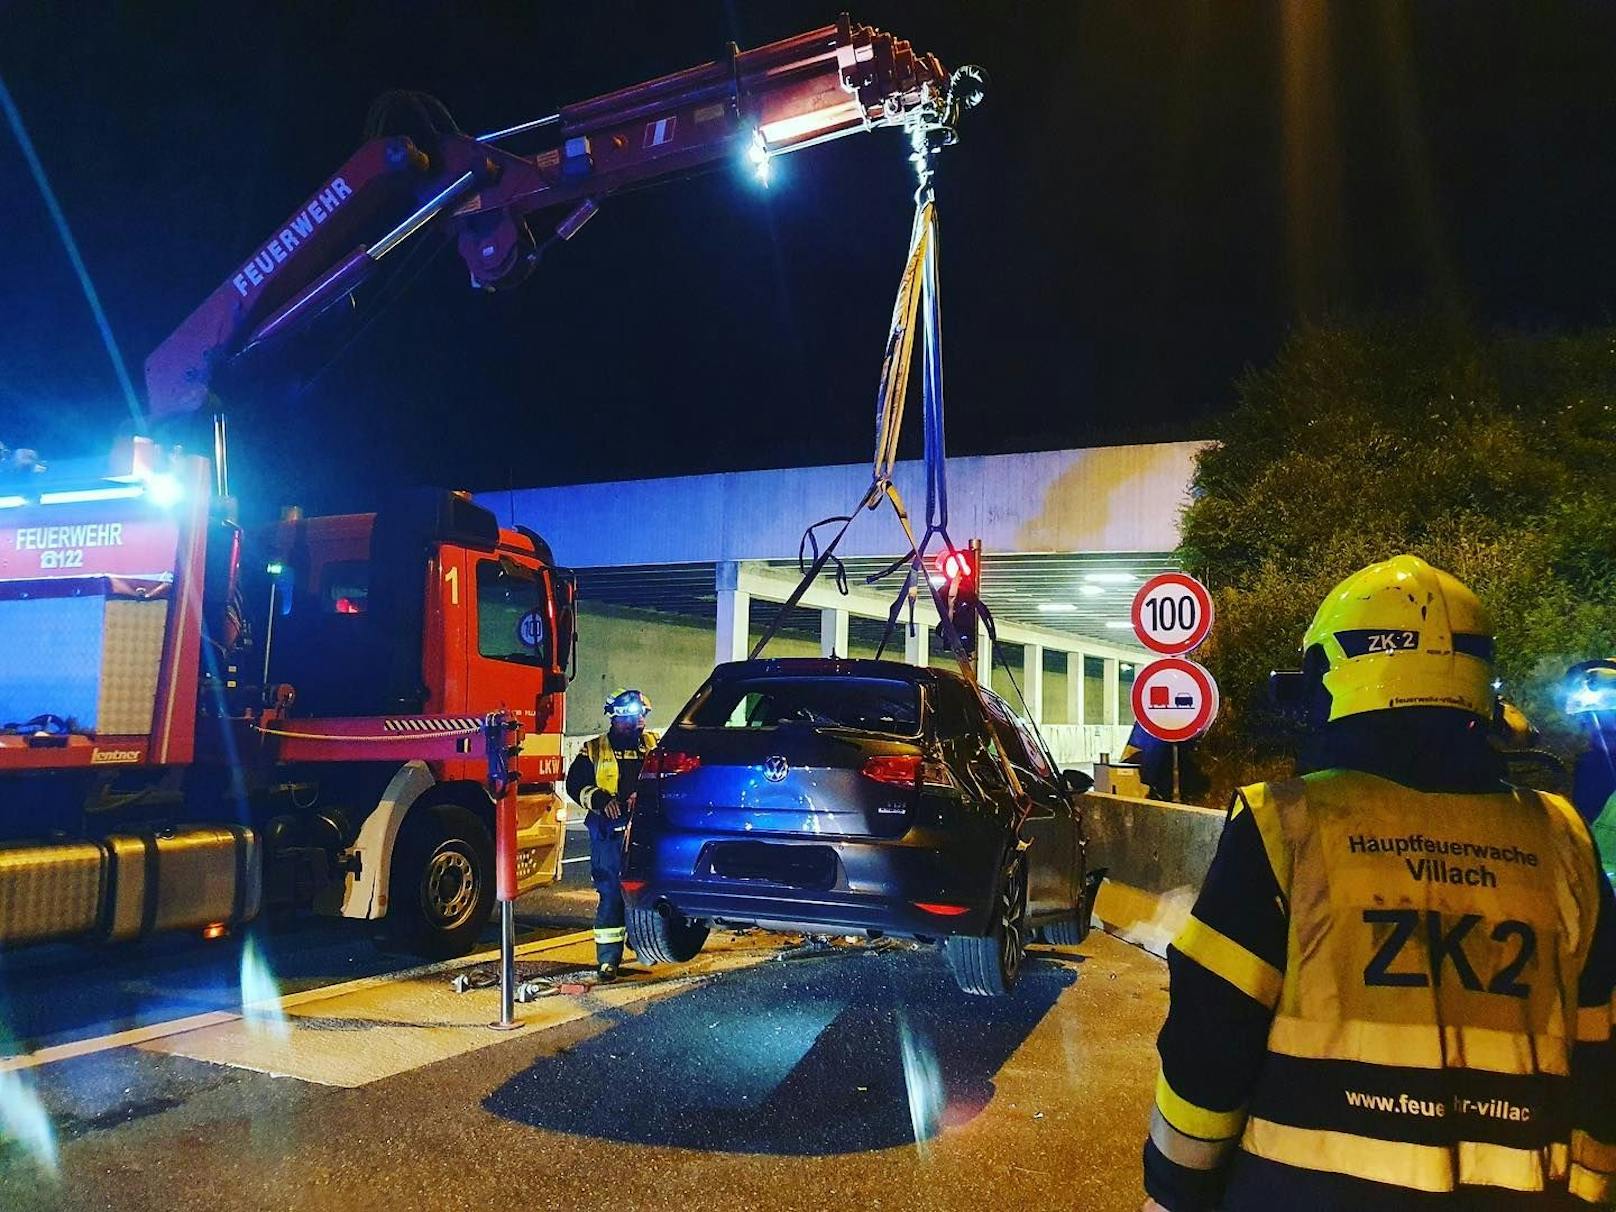 Der Lenker wurde von Rettung und Notarzt versorgt und mit Verletzungen unbestimmten Grades ins LKH Villach gebracht. Das Fahrzeug wurde von der Feuerwehr abtransportiert.